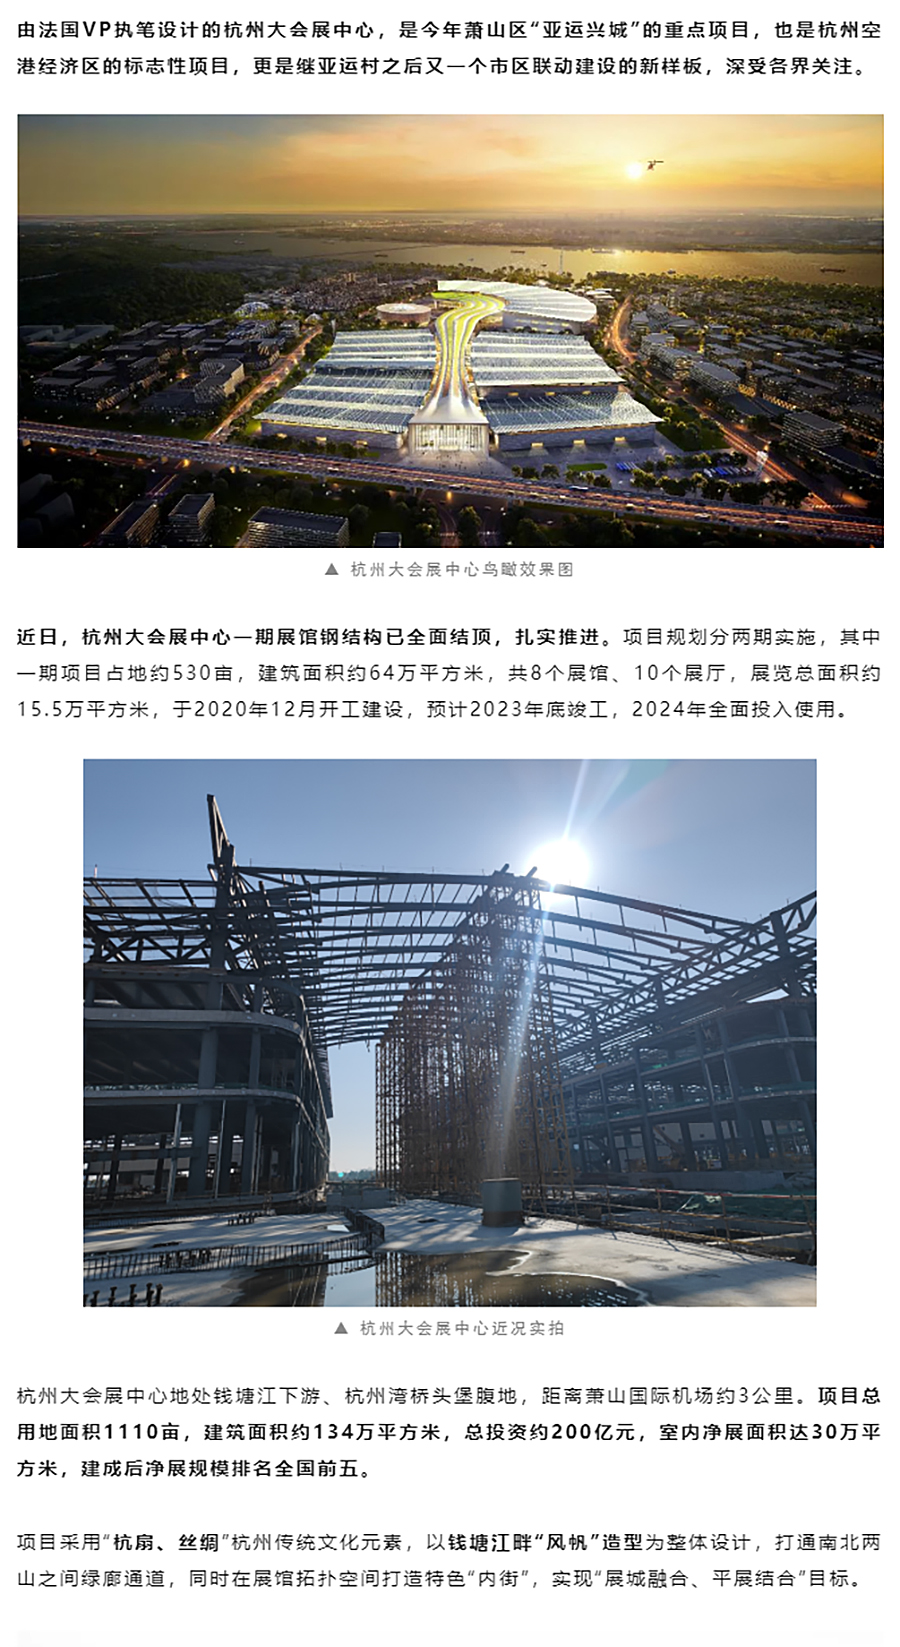 项目近况-_-杭州大会展中心一期展馆钢结构已全面结顶_0000_图层-1.jpg